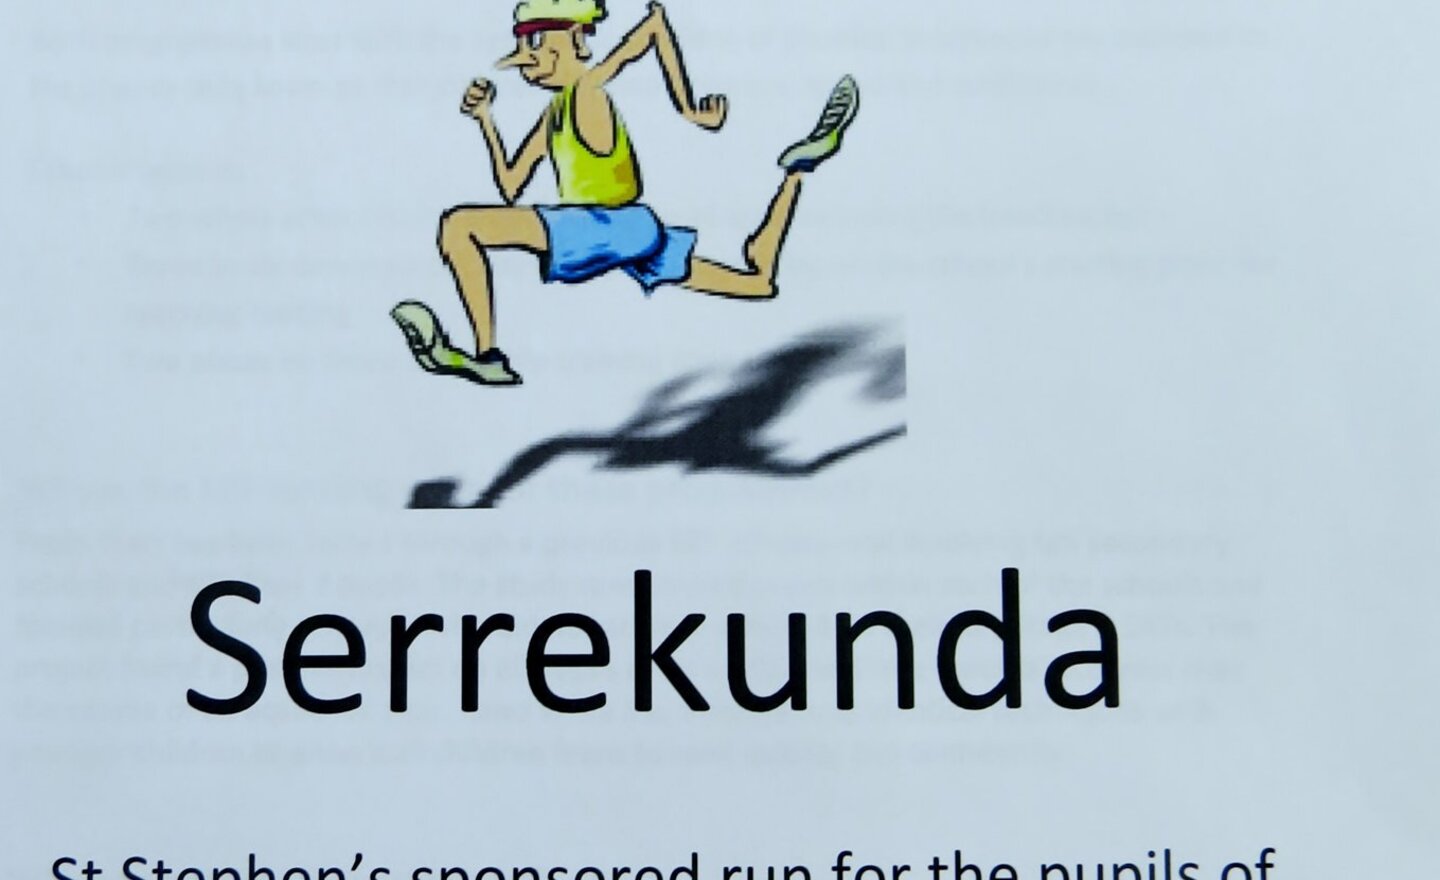 Image of Run for Serrekunda